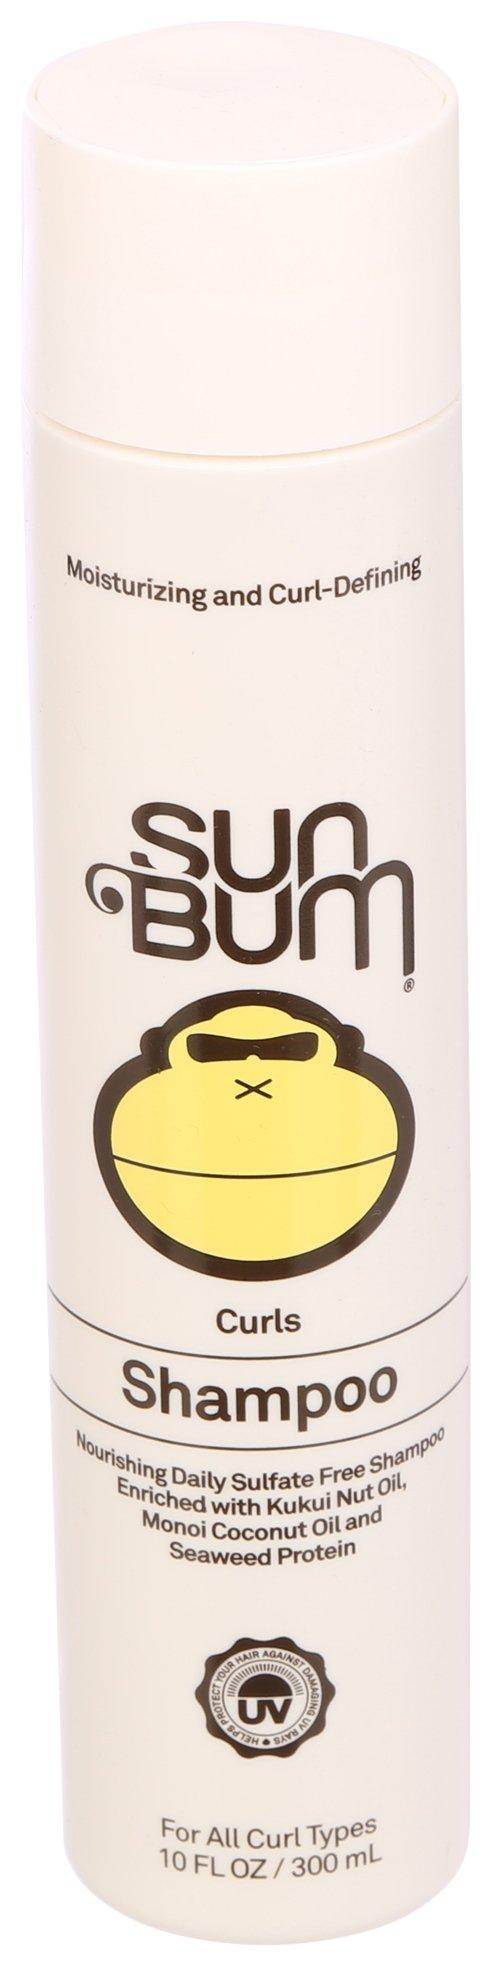 Sun Bum 10 Fl. Oz. Curls Shampoo